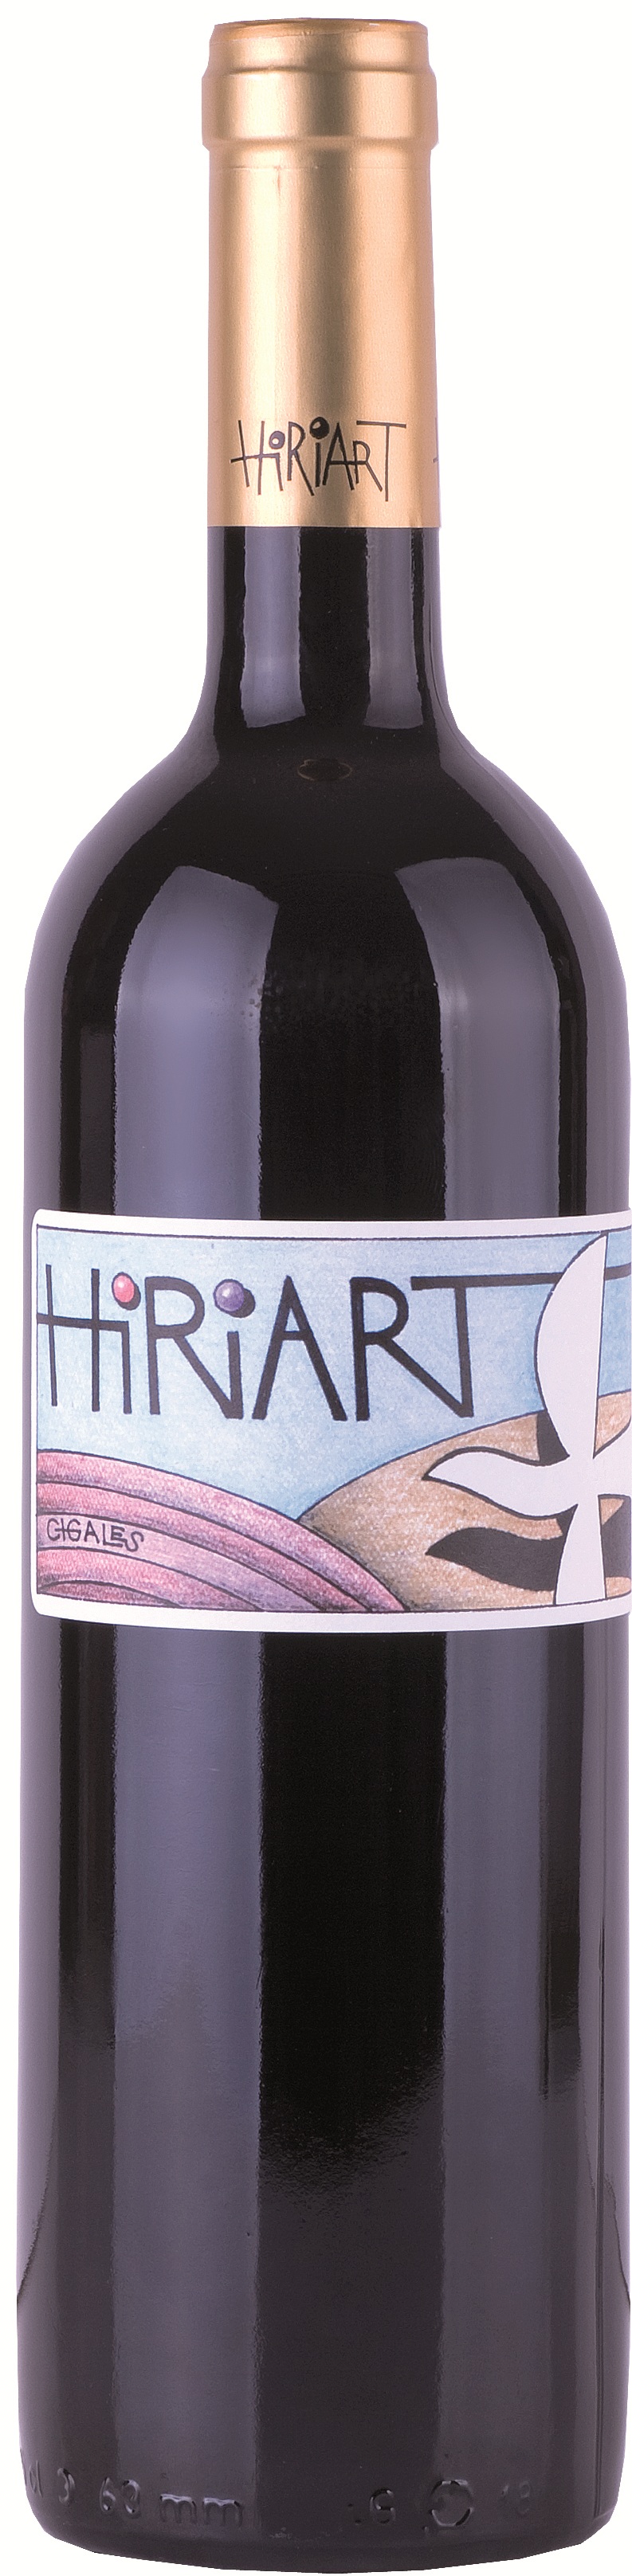 Logo del vino Hiriart Tinto Crianza